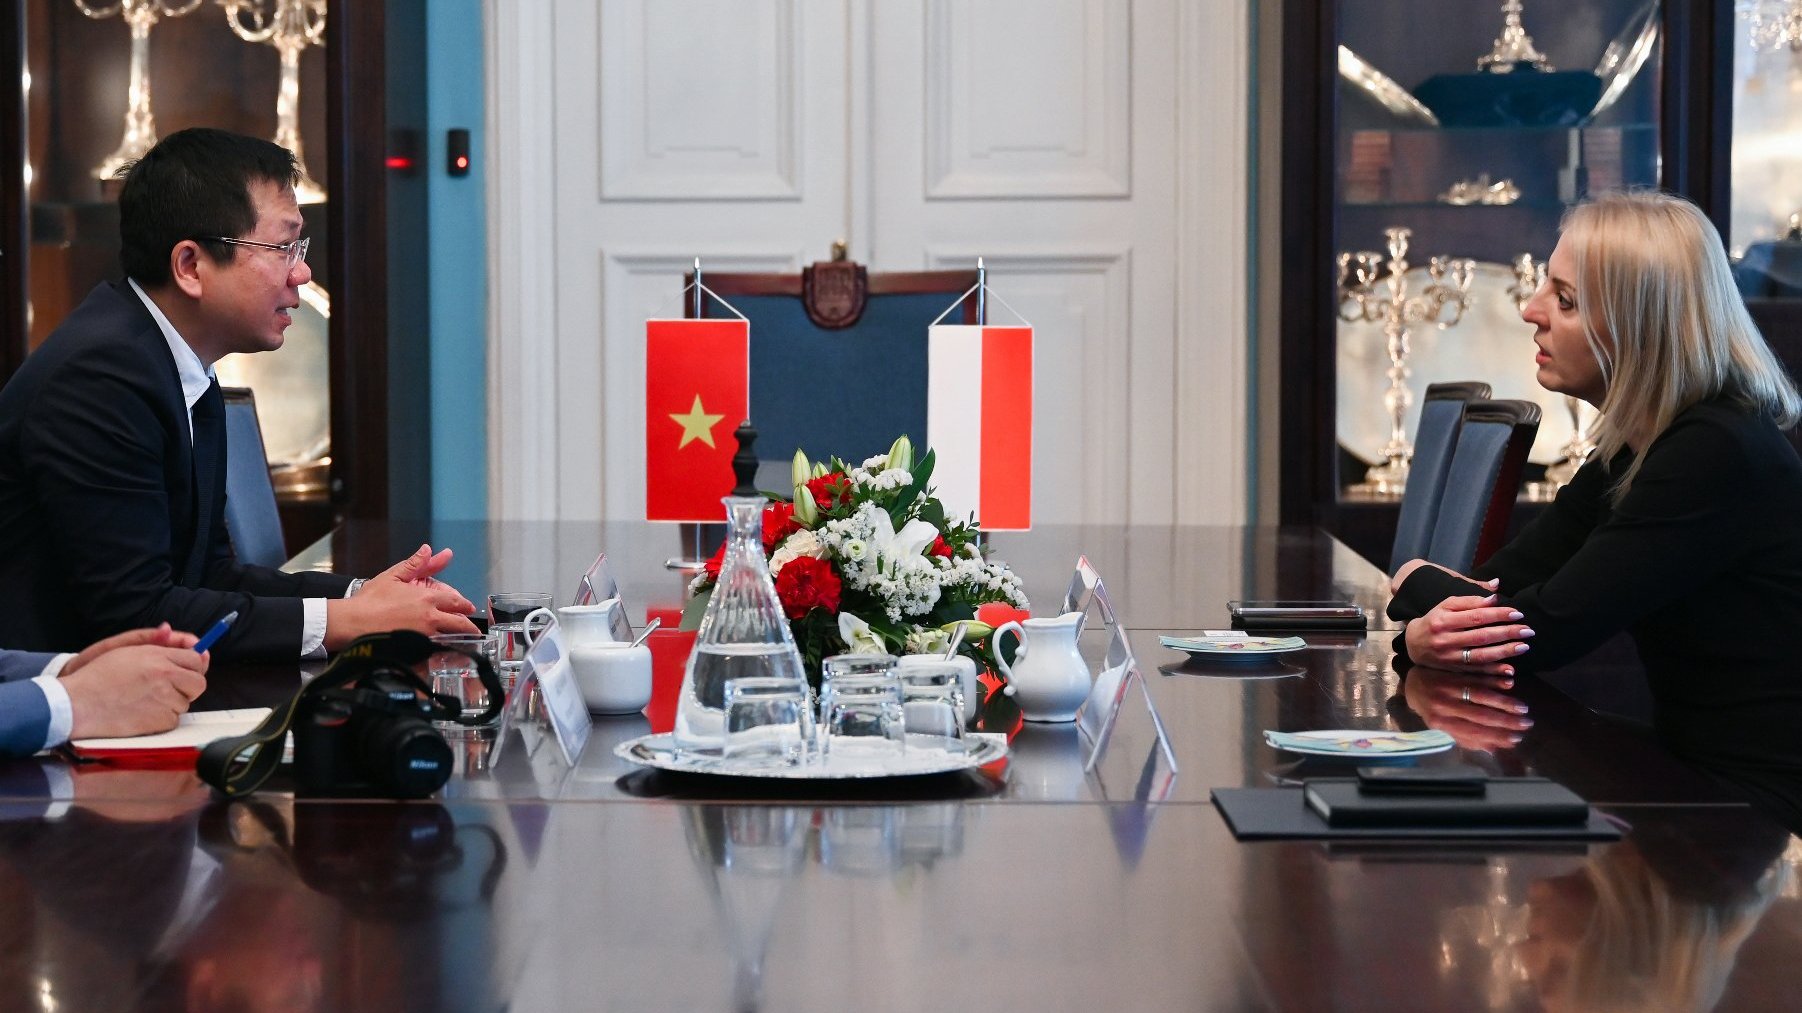 Na zdjęciu ambasador i zastępczyni prezydenta siedzący przy stole, rozmawiają